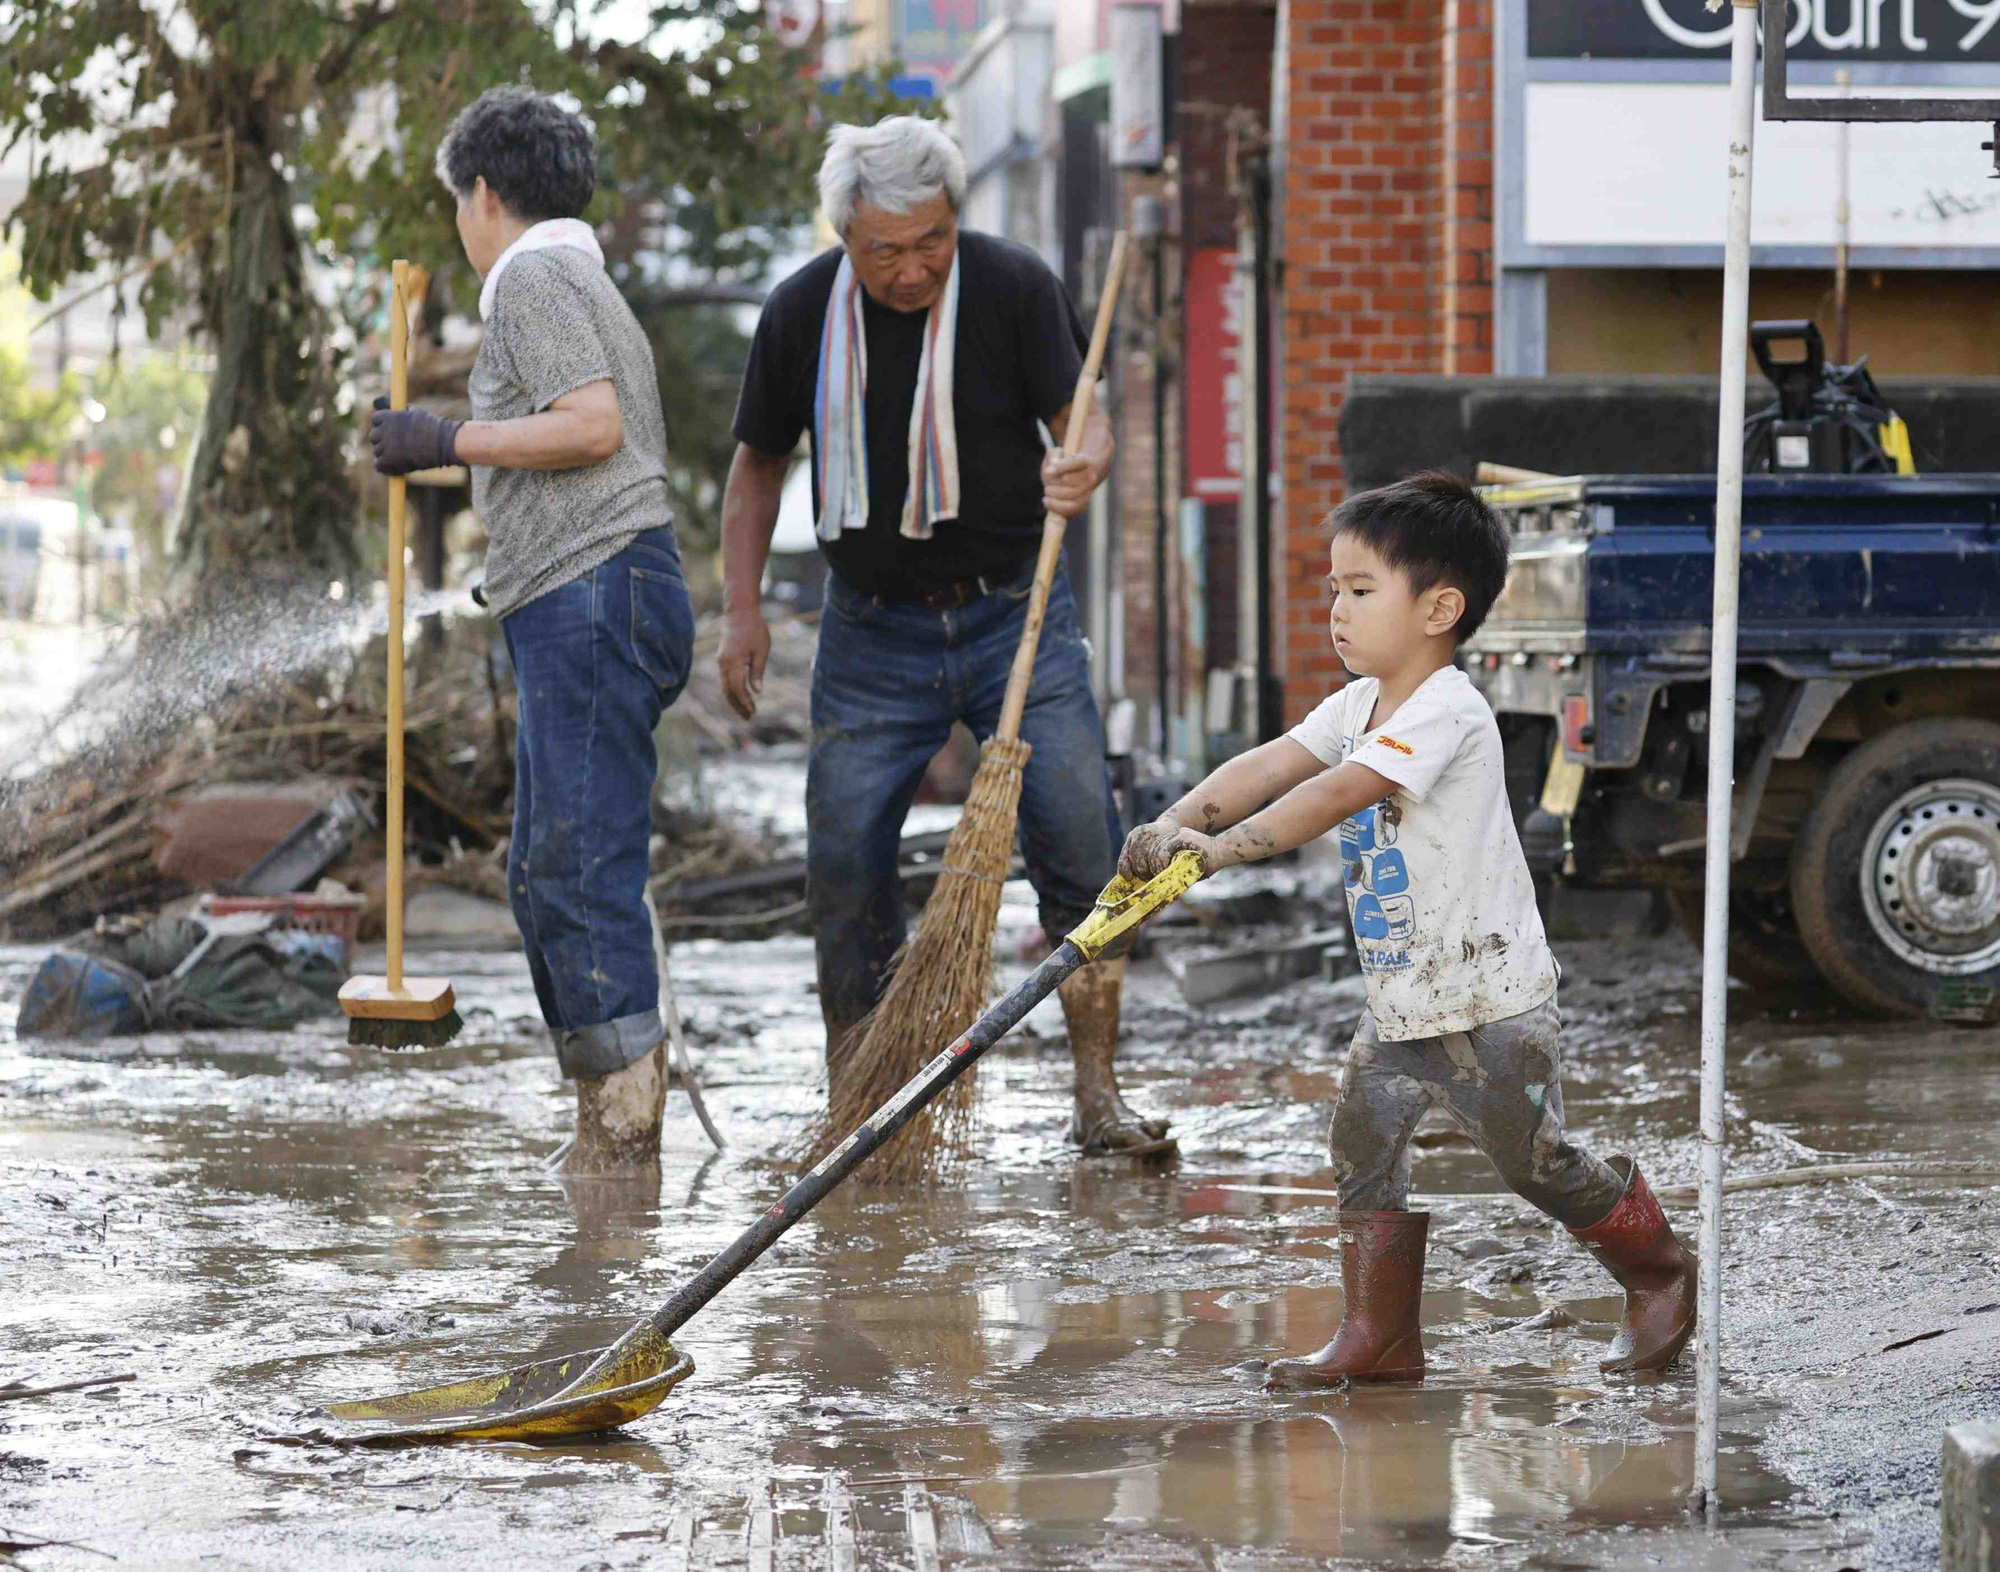 Chùm ảnh lũ lụt nhấn chìm viện dưỡng lão, nuốt chửng nhà dân khiến ít nhất 20 người thiệt mạng ở Nhật Bản - Ảnh 14.